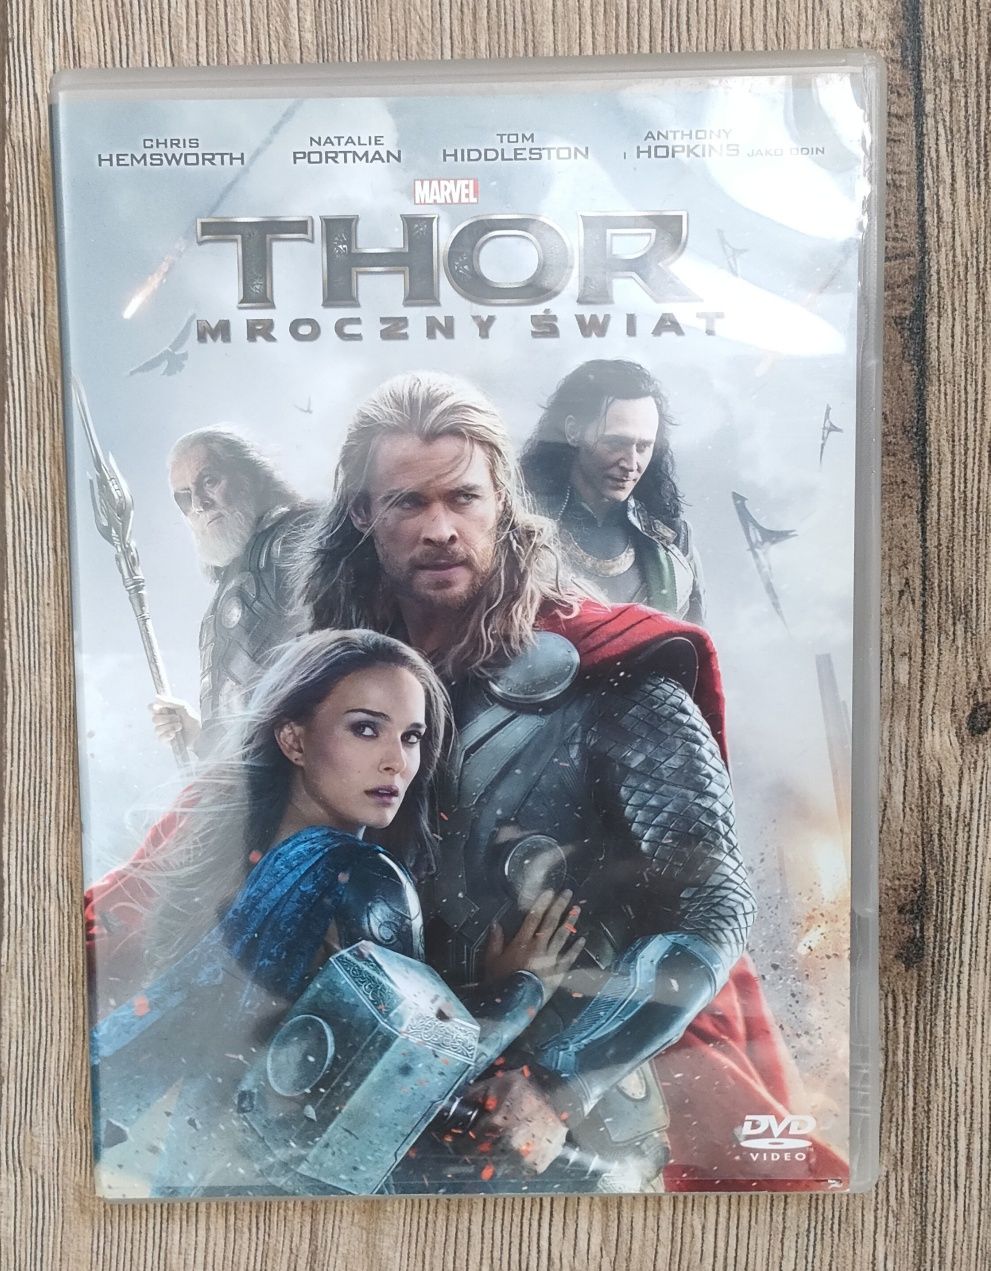 "Thor- Mroczny Świat" film dvd